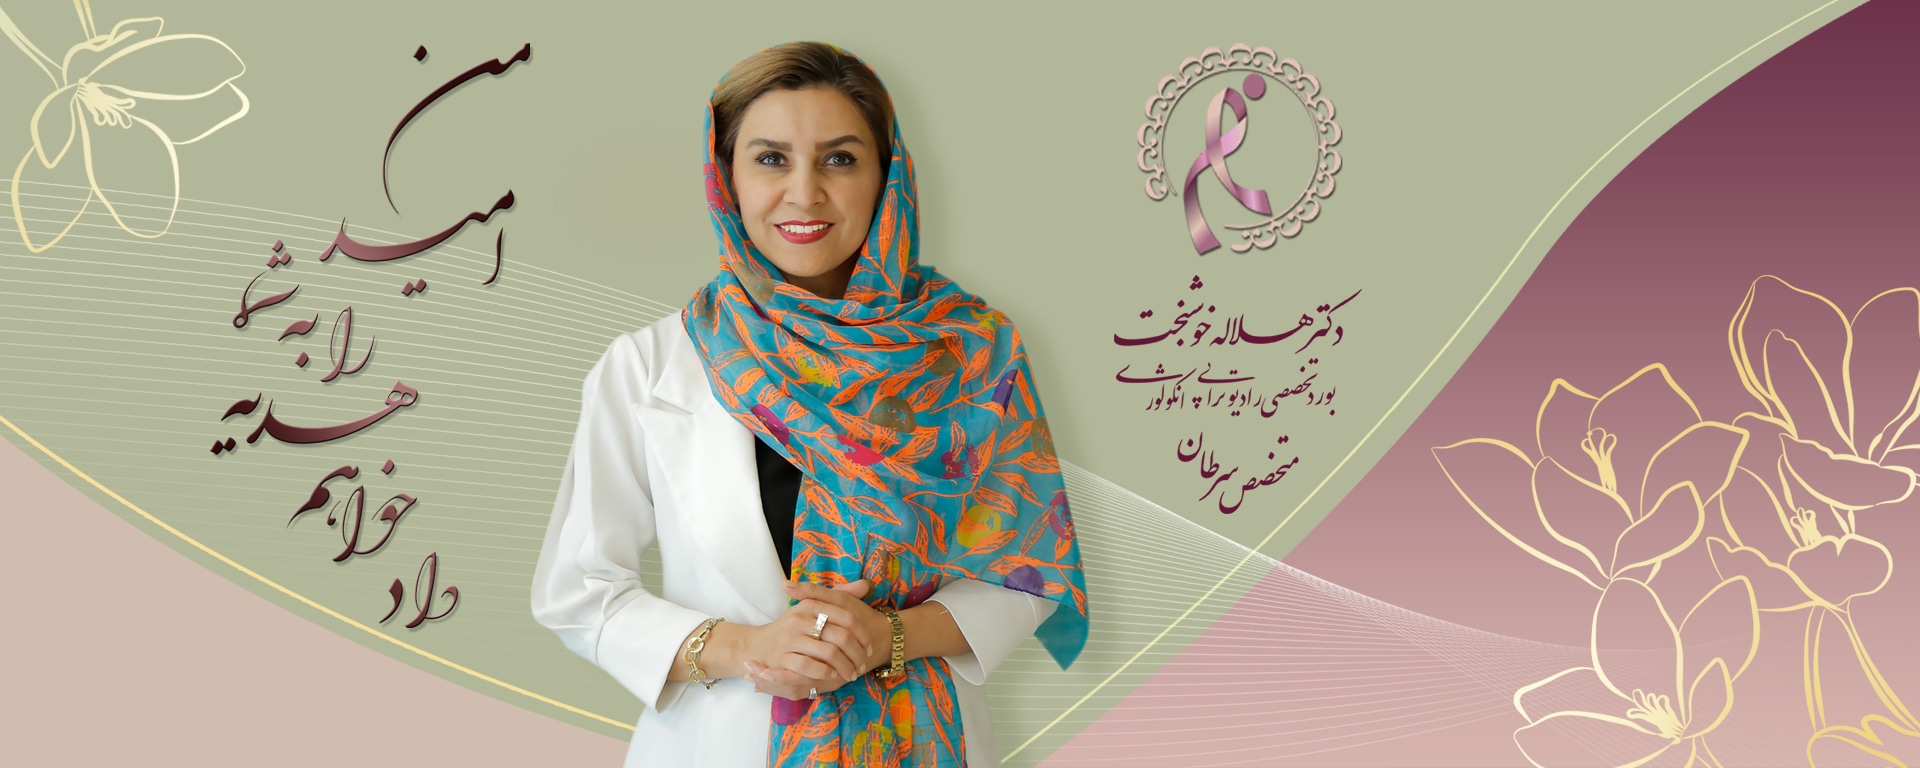 دکتر متخصص توموتراپی در تهران - دکترهلاله خوشبخت